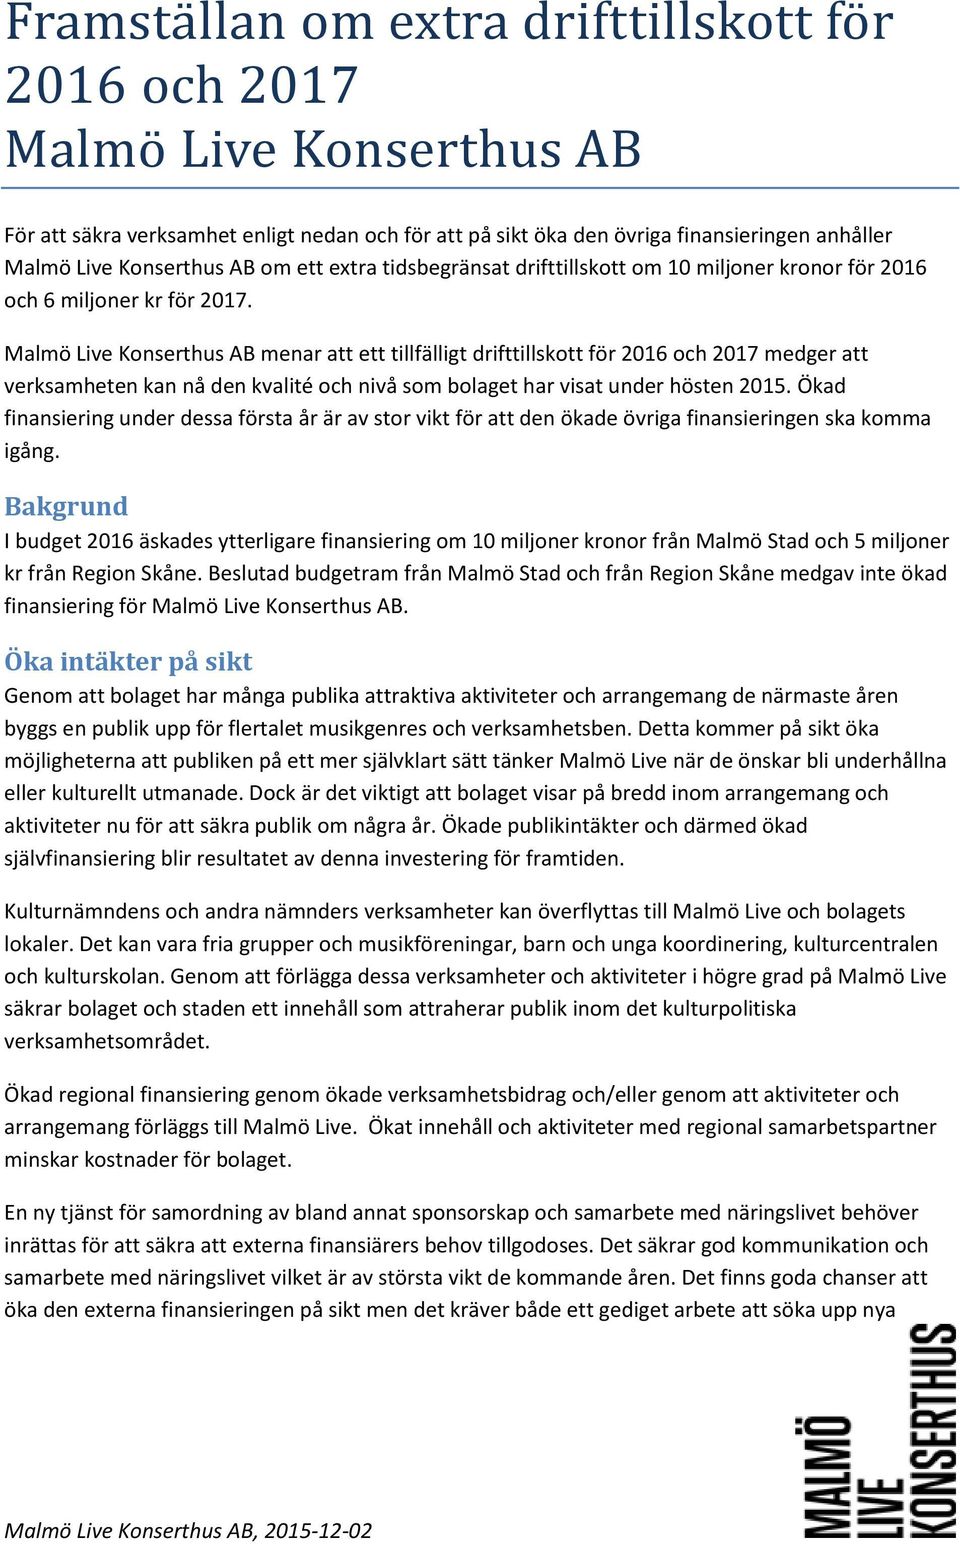 Malmö Live Konserthus AB menar att ett tillfälligt drifttillskott för 2016 och 2017 medger att verksamheten kan nå den kvalité och nivå som bolaget har visat under hösten 2015.